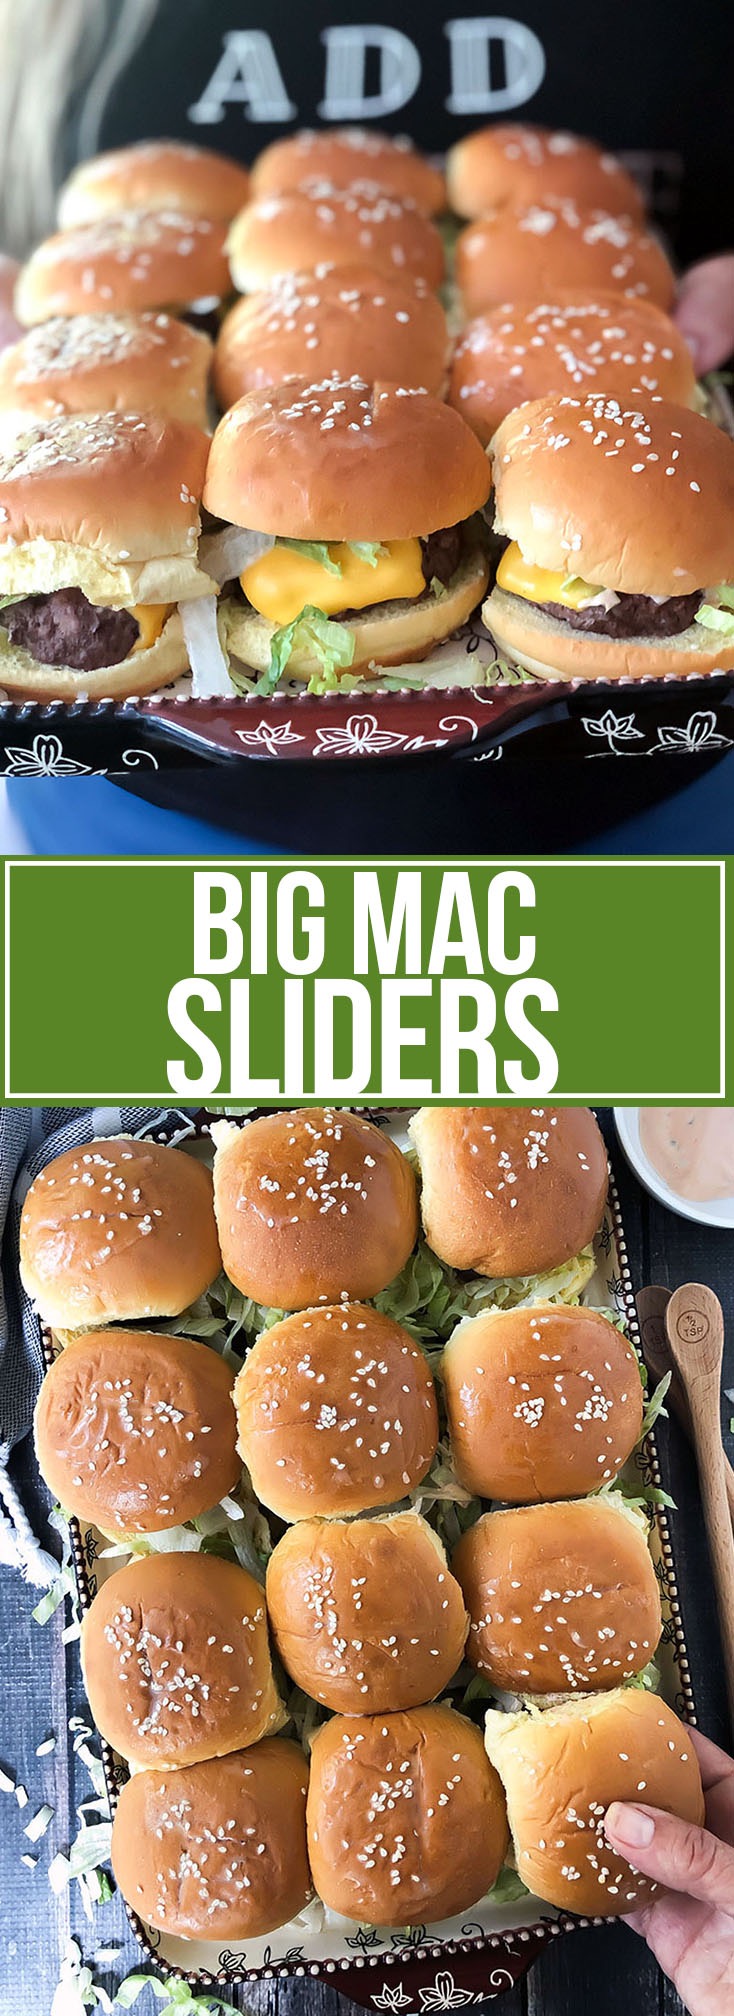 BIG MAC SLIDERS